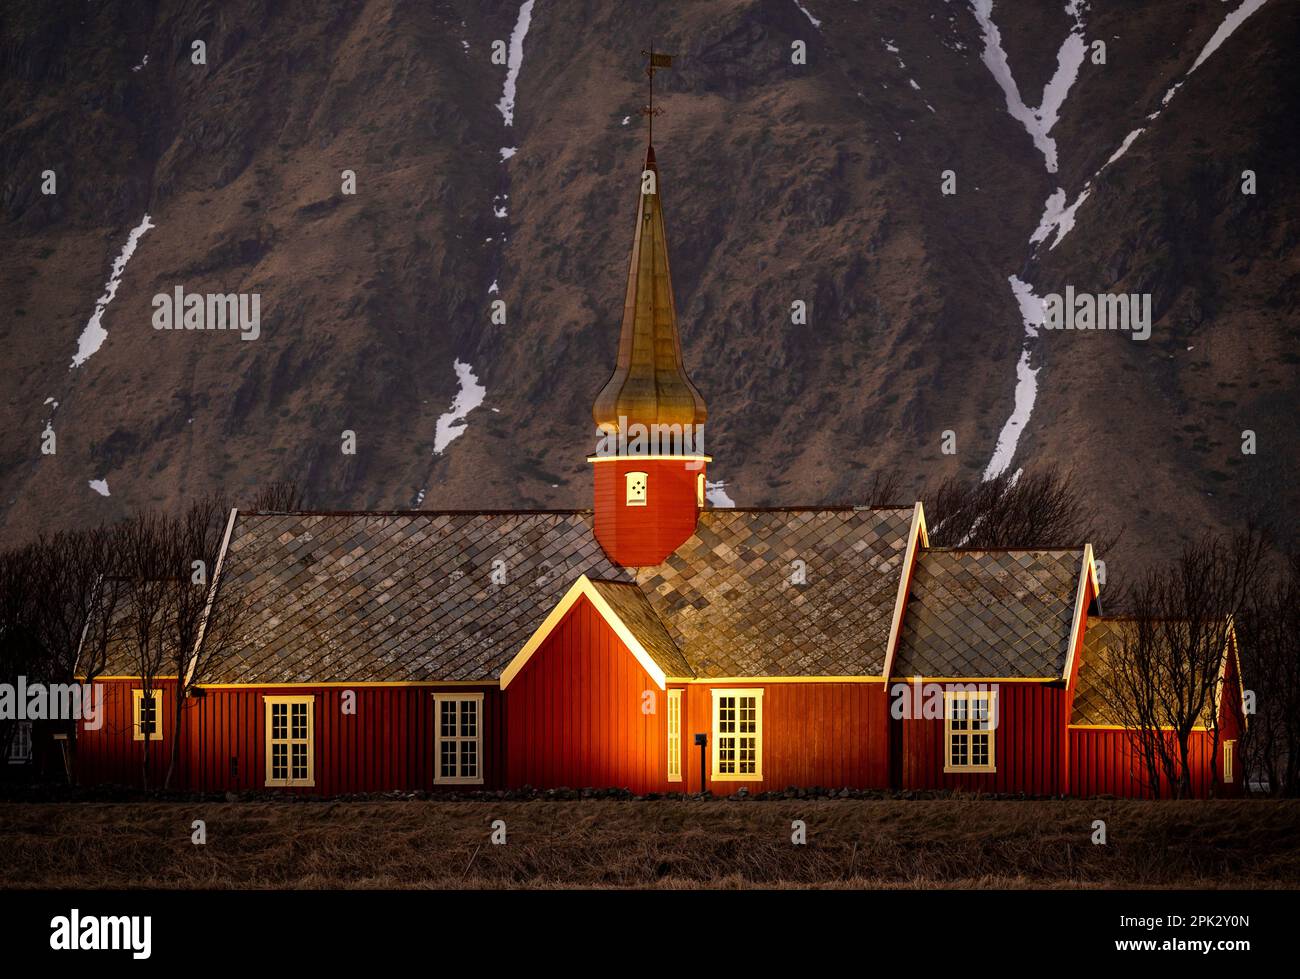 Chiesa in legno di colore rosso da 1780 anno, illuminata di sera con alta montagna rocciosa con neve. Flakstad, Lofoten, Norvegia. Foto Stock